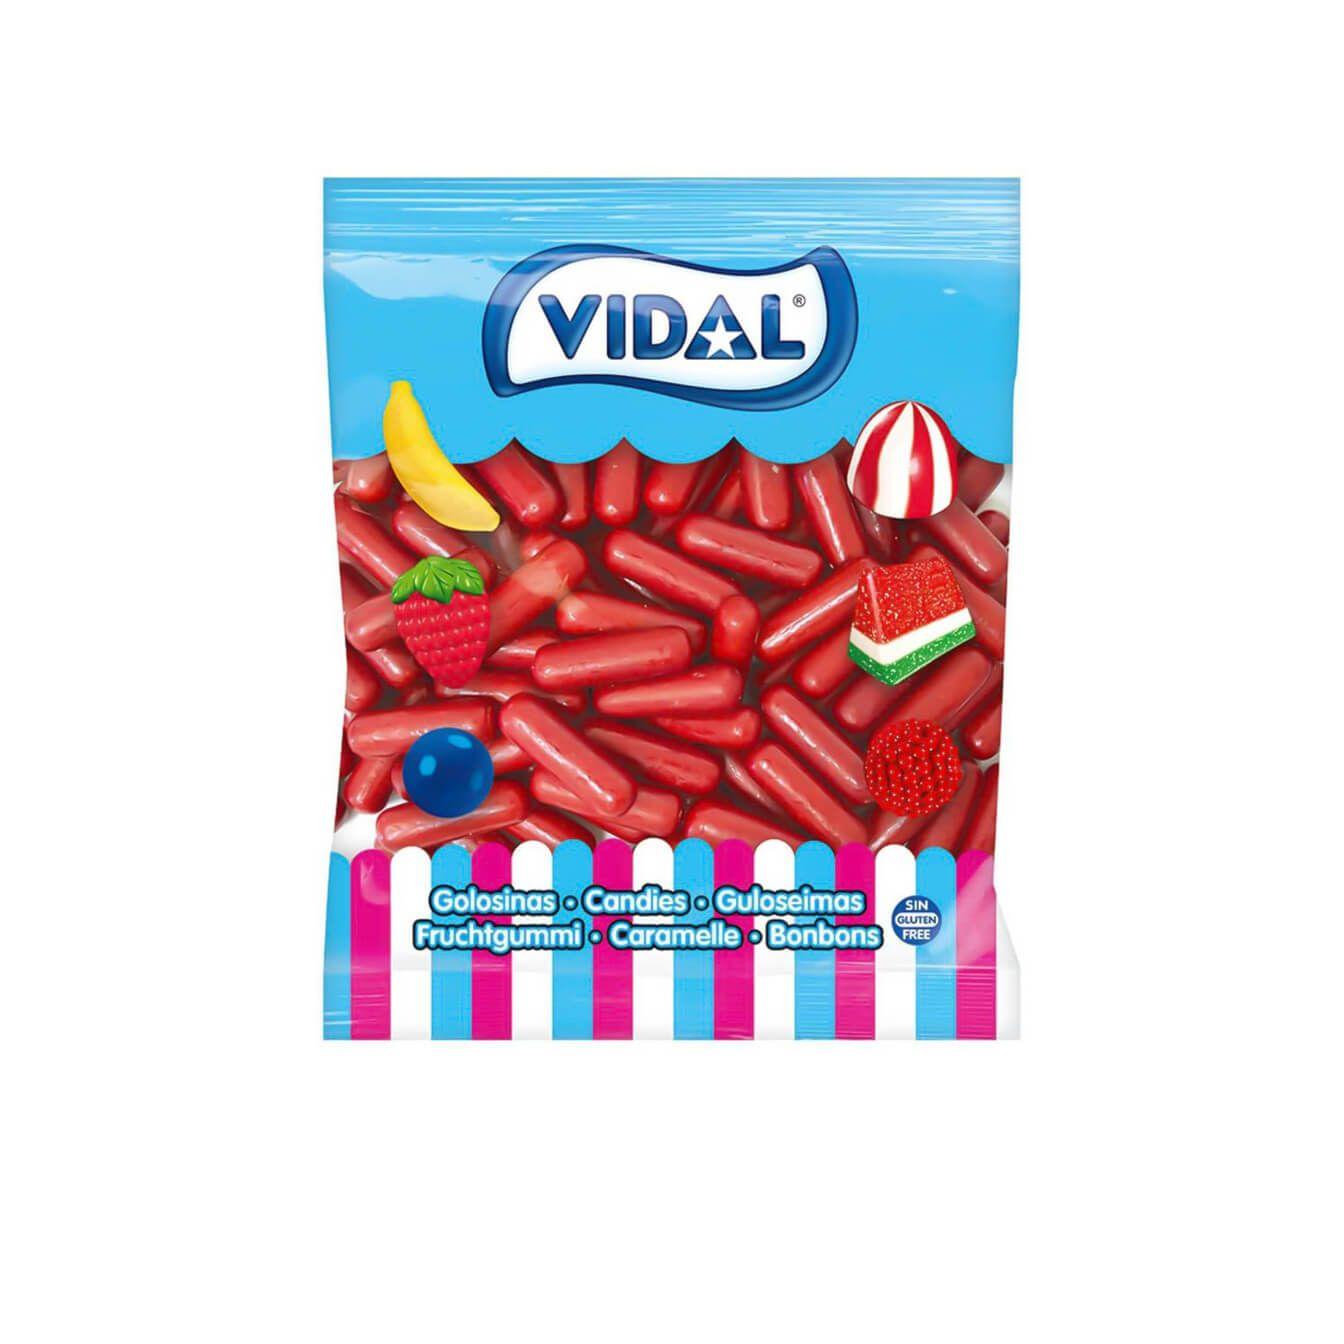 Vidal - Vidal golosinas Pintalabios bolsa 1,6 Kg - Divertido chicle en forma de pintalabios y que realmente te pinta los labios y la lengua cuando se come - Delicioso sabor a fresa y chicle tutti. Su dulzura gusta a grandes y pequeños